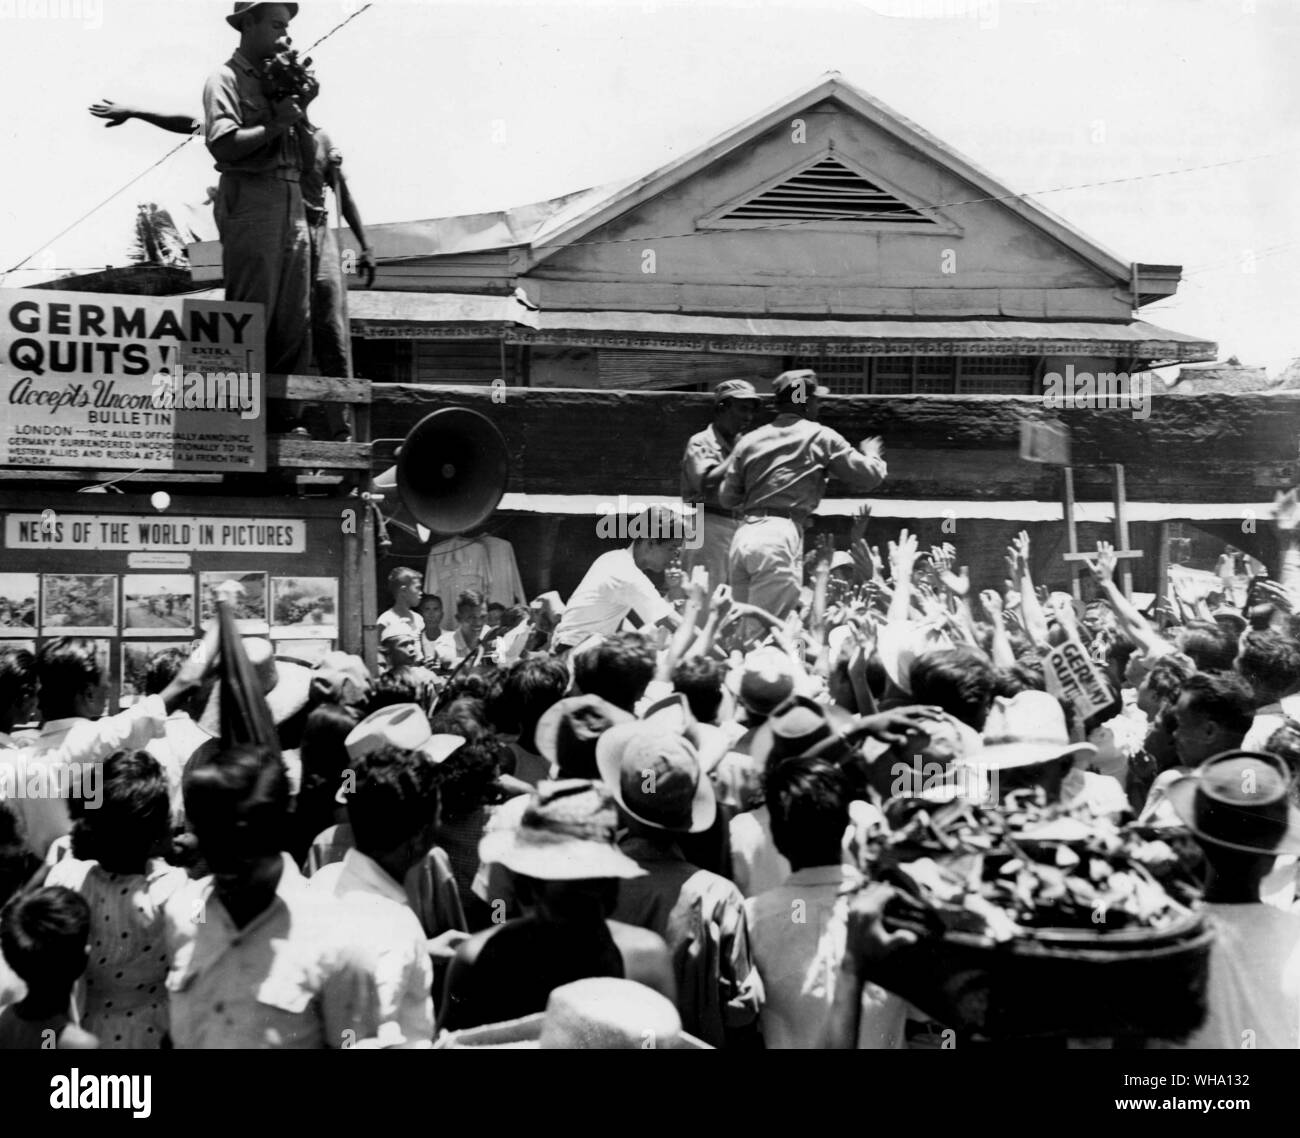 WW2: i residenti delle regioni periferiche sezioni di Manila, Luzon, si affollano attorno a un mobile news carrello come si arresta in corrispondenza di un angolo di occupato per annunciare la resa incondizionata della Germania. Il 2 maggio 1945. Foto Stock